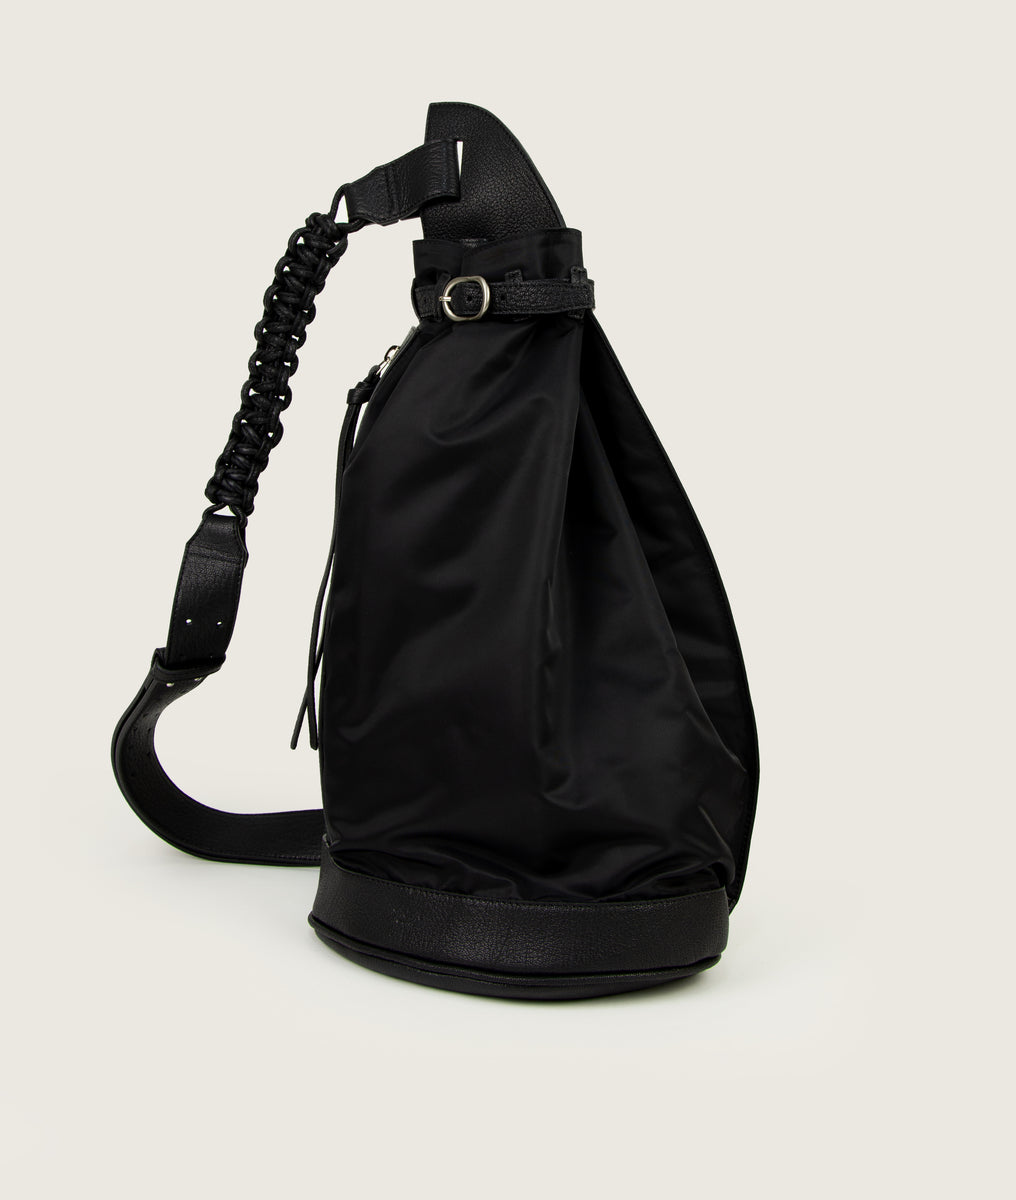 more bag nylon black